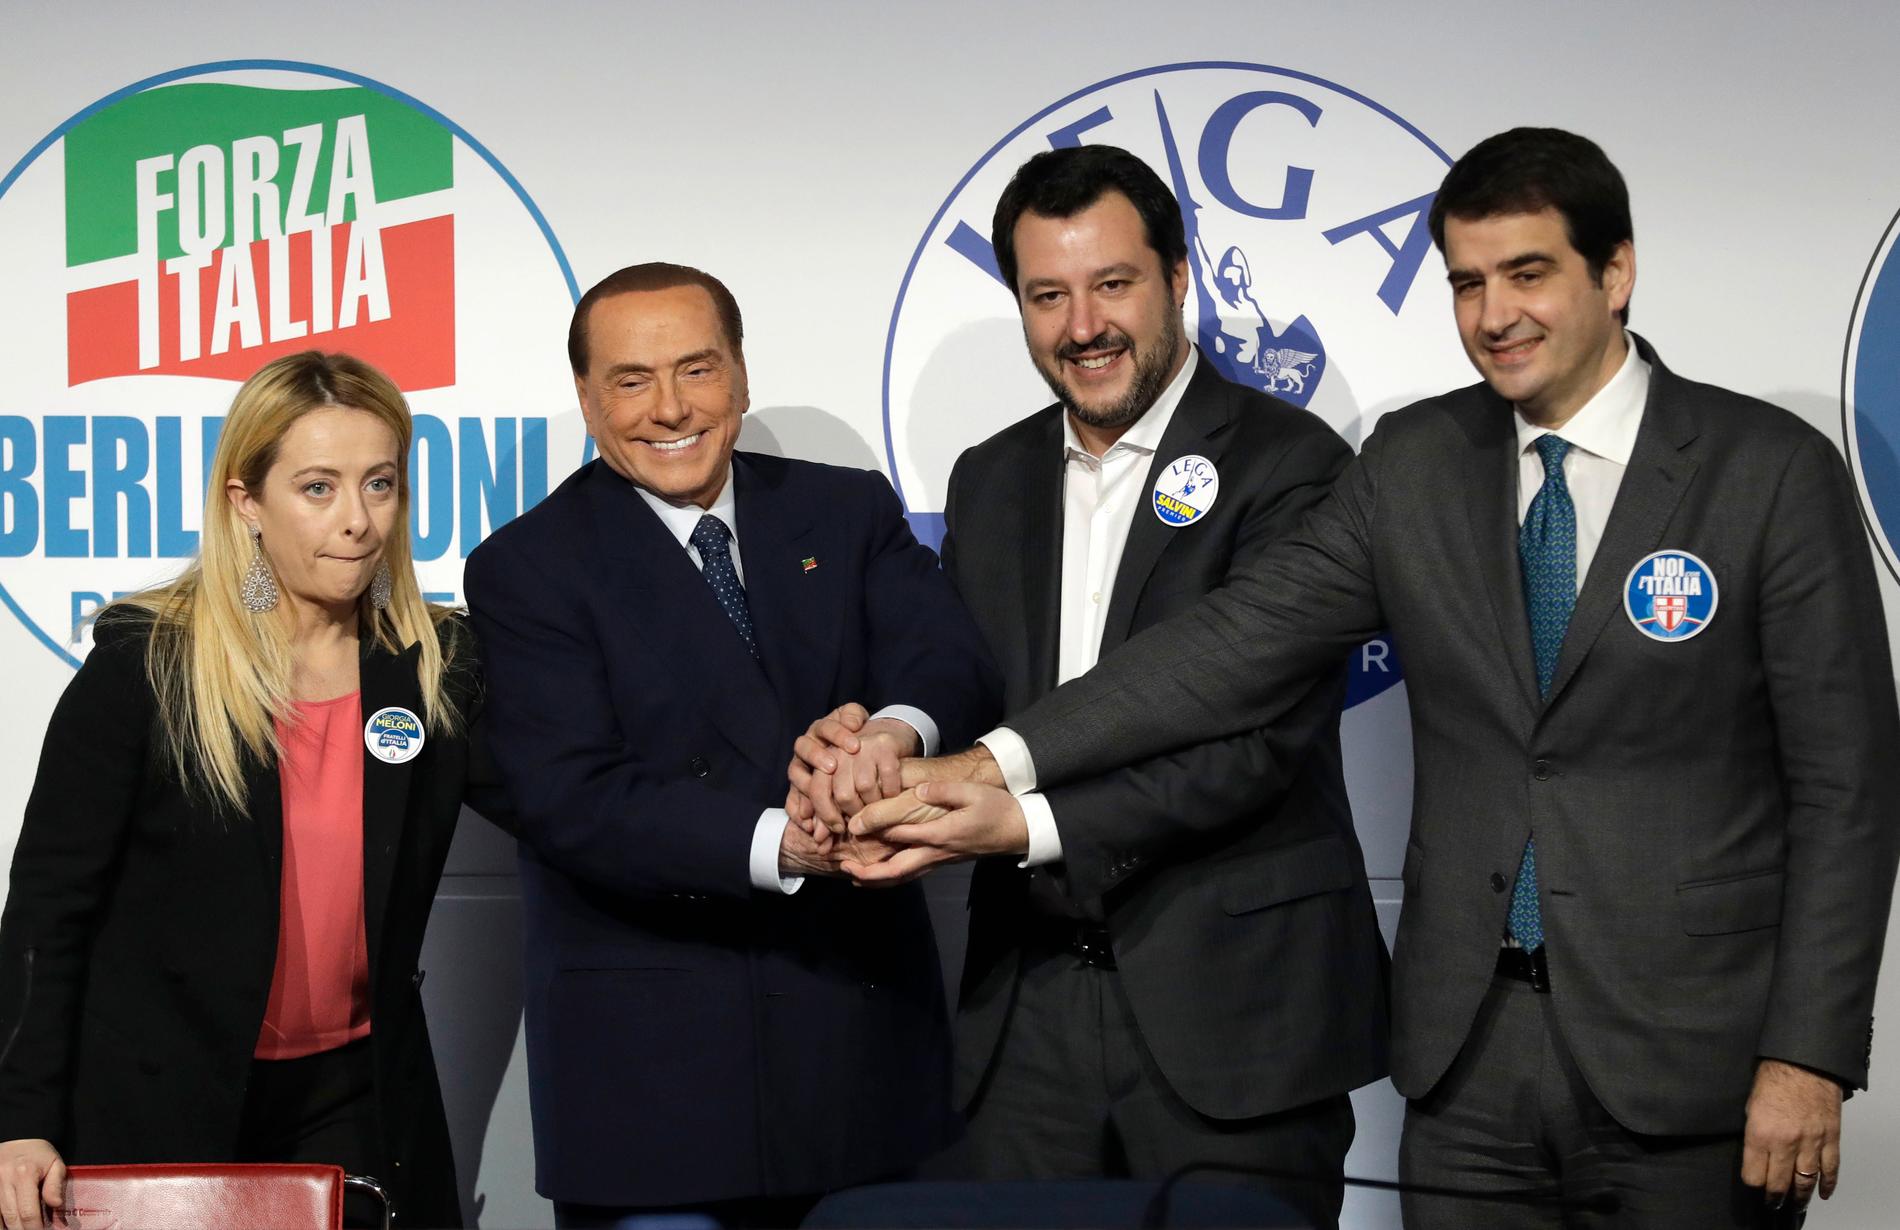 Högeralliansen i samling inför valet 2018. Då spelade Giorgia Meloni en biroll, medan ex-premiärministern Silvio Berlusconi och Legas Matteo Salvini fick det allra mesta av rampljuset. Till höger står Raffaele Fitto, som då ledde ett mindre högerparti men som i dag har gått över till Italiens bröder. Arkivbild.